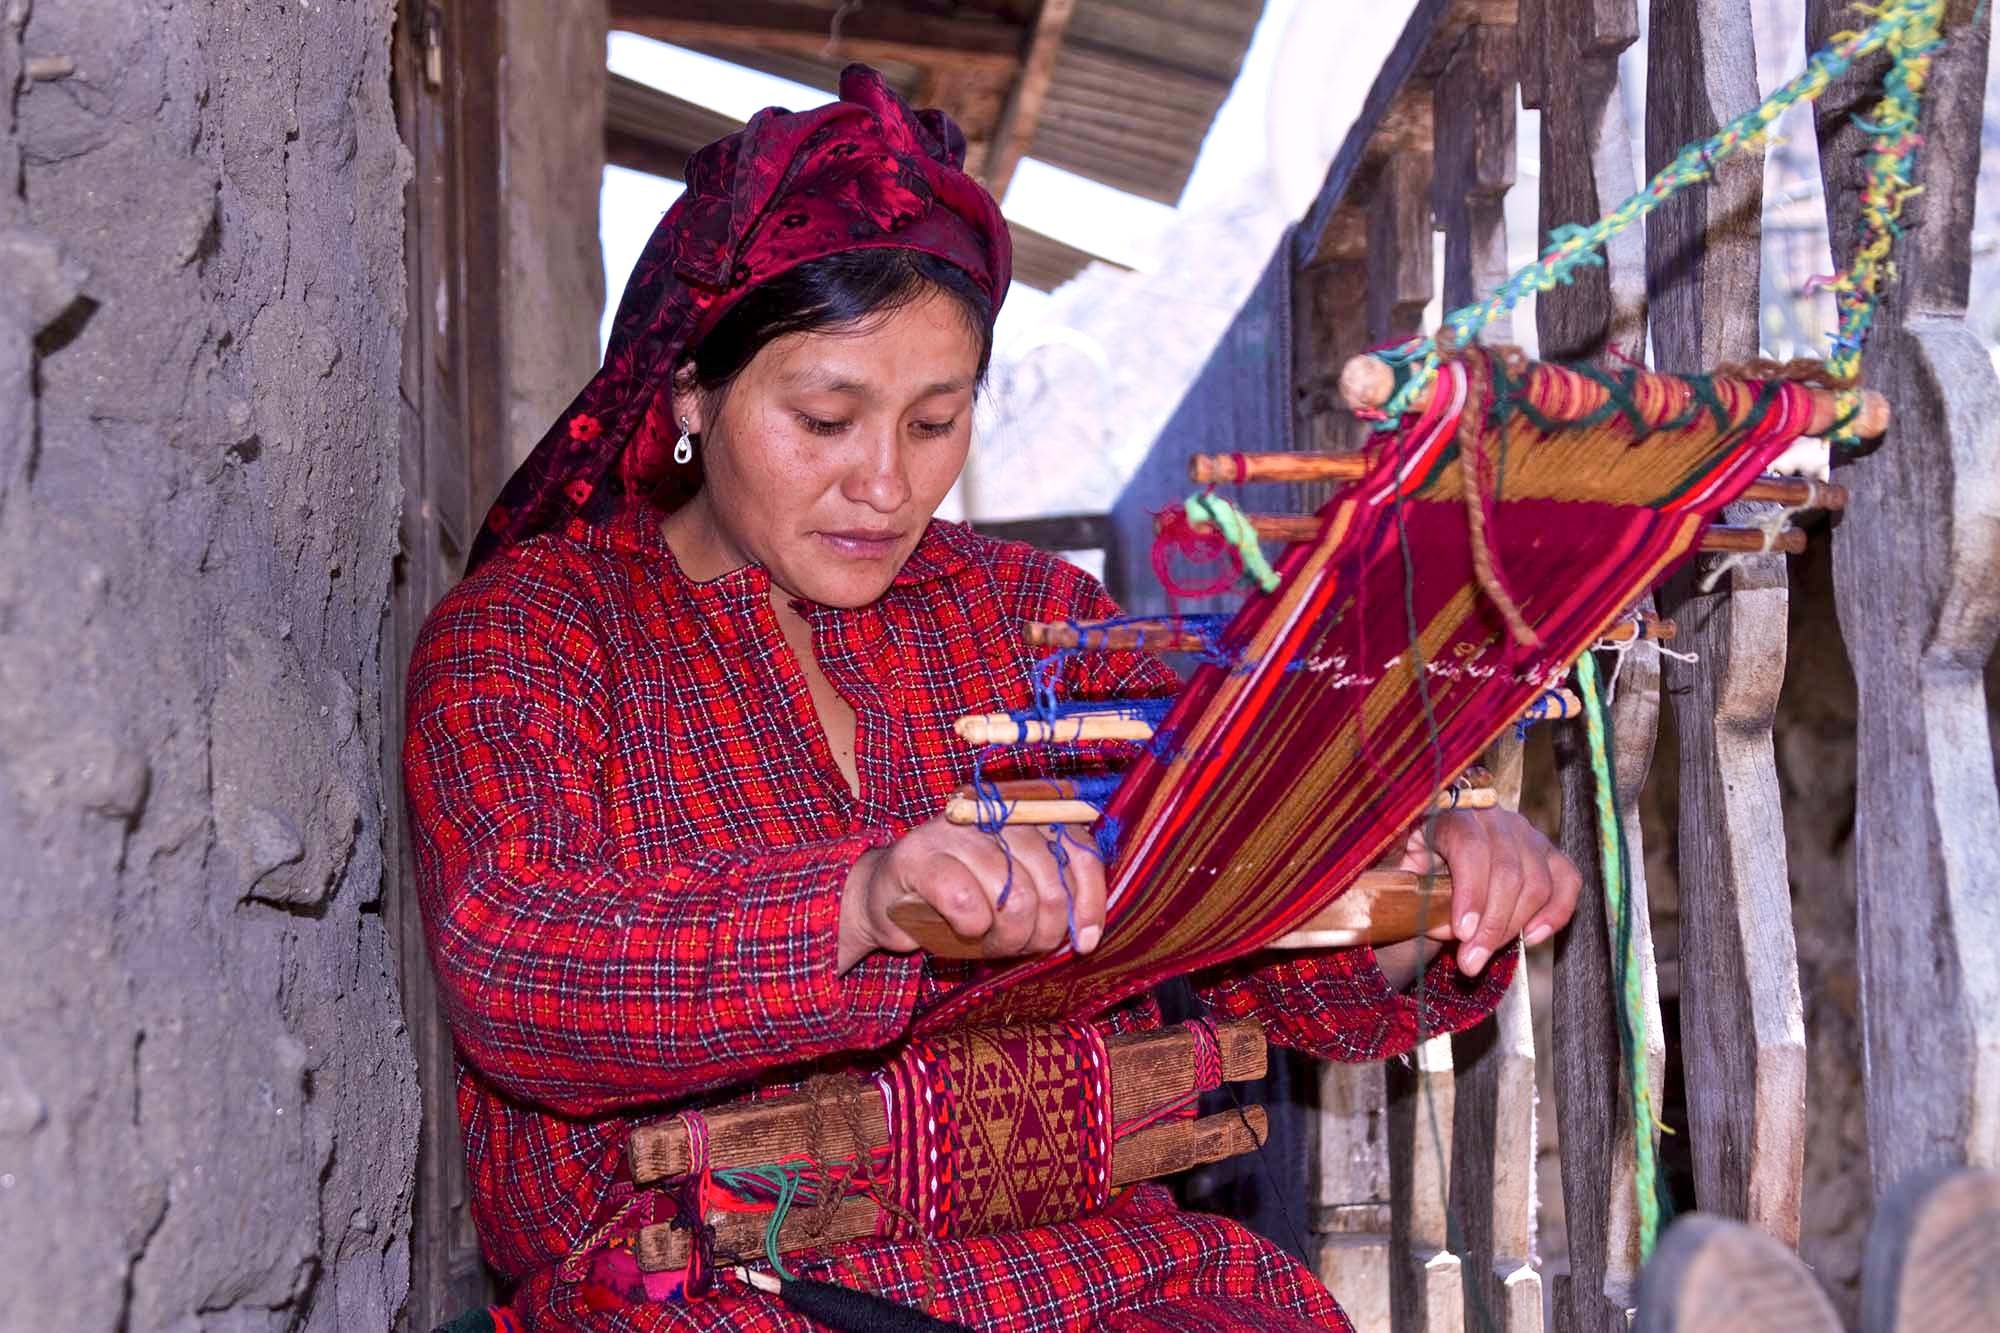  Sonia weaving a belt  wak'a  